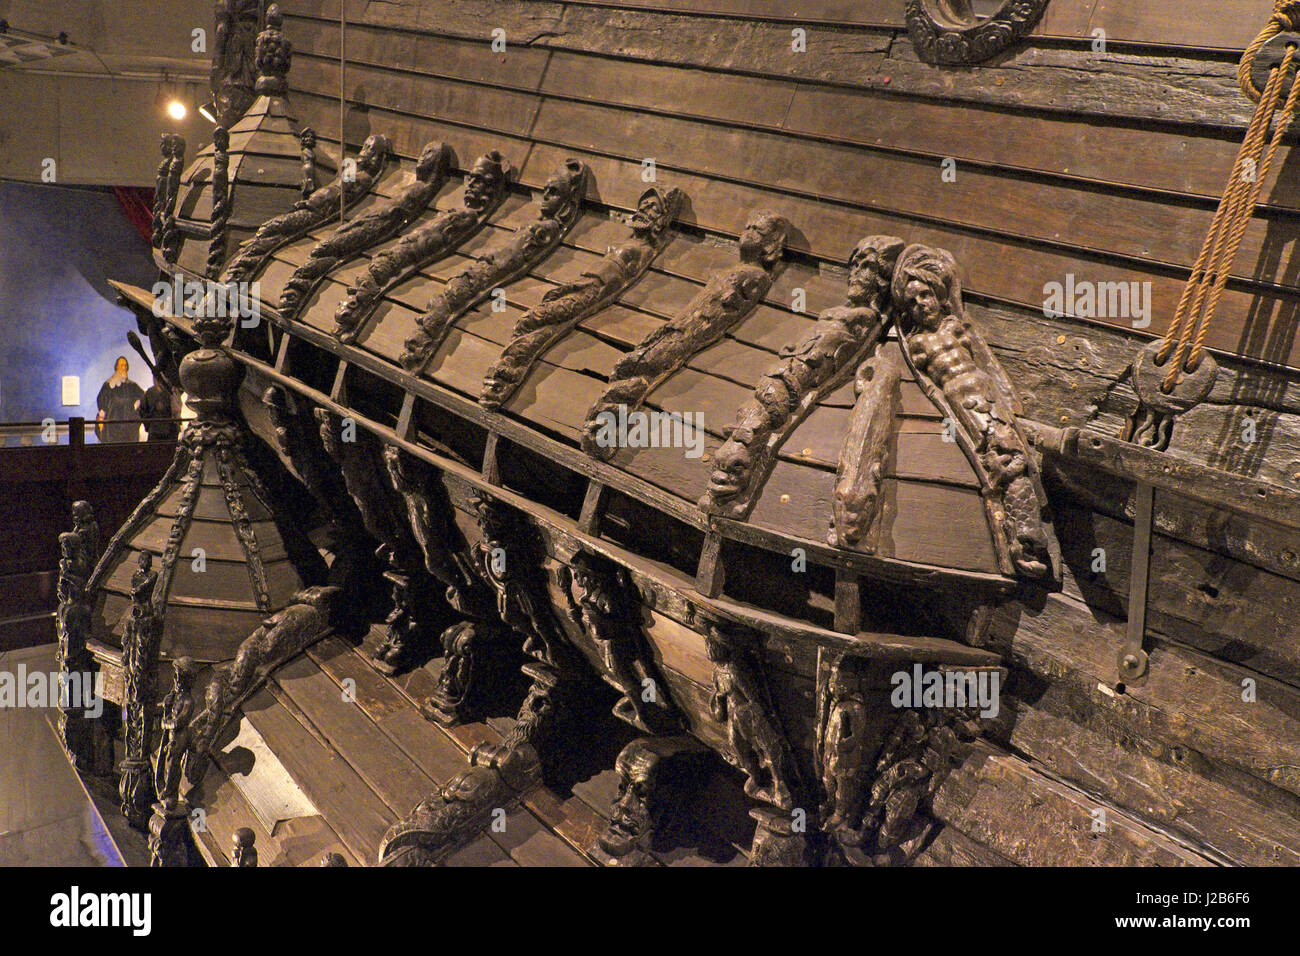 The Vasa ship inside the Vasa Museum in Stockholm, Sweden Stock ...